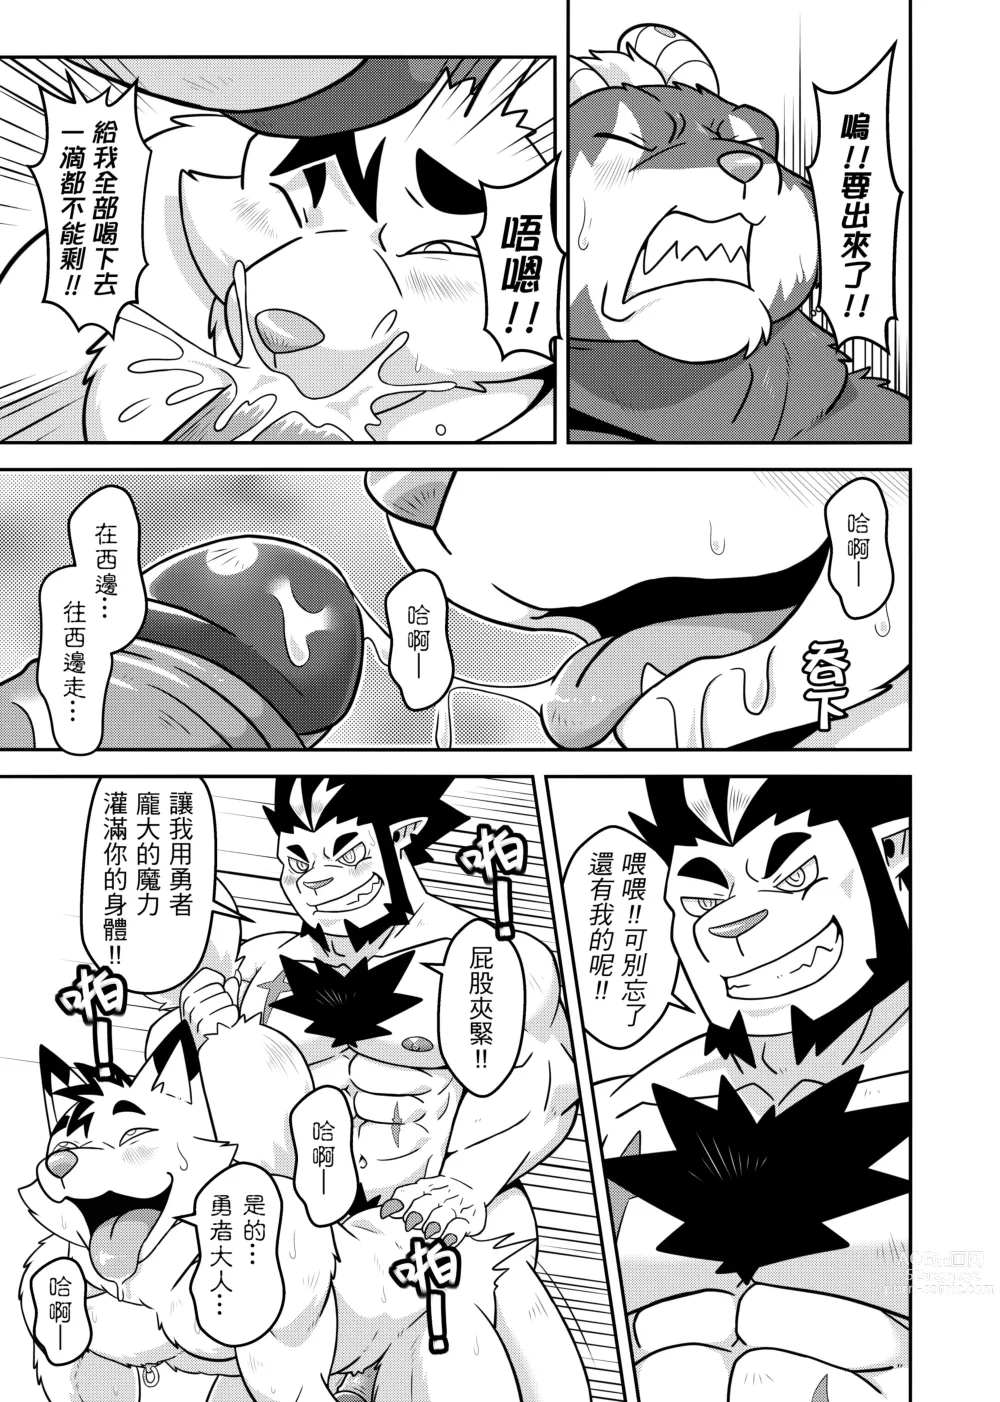 Page 13 of doujinshi 勇者的大小只有魔王塞得下3